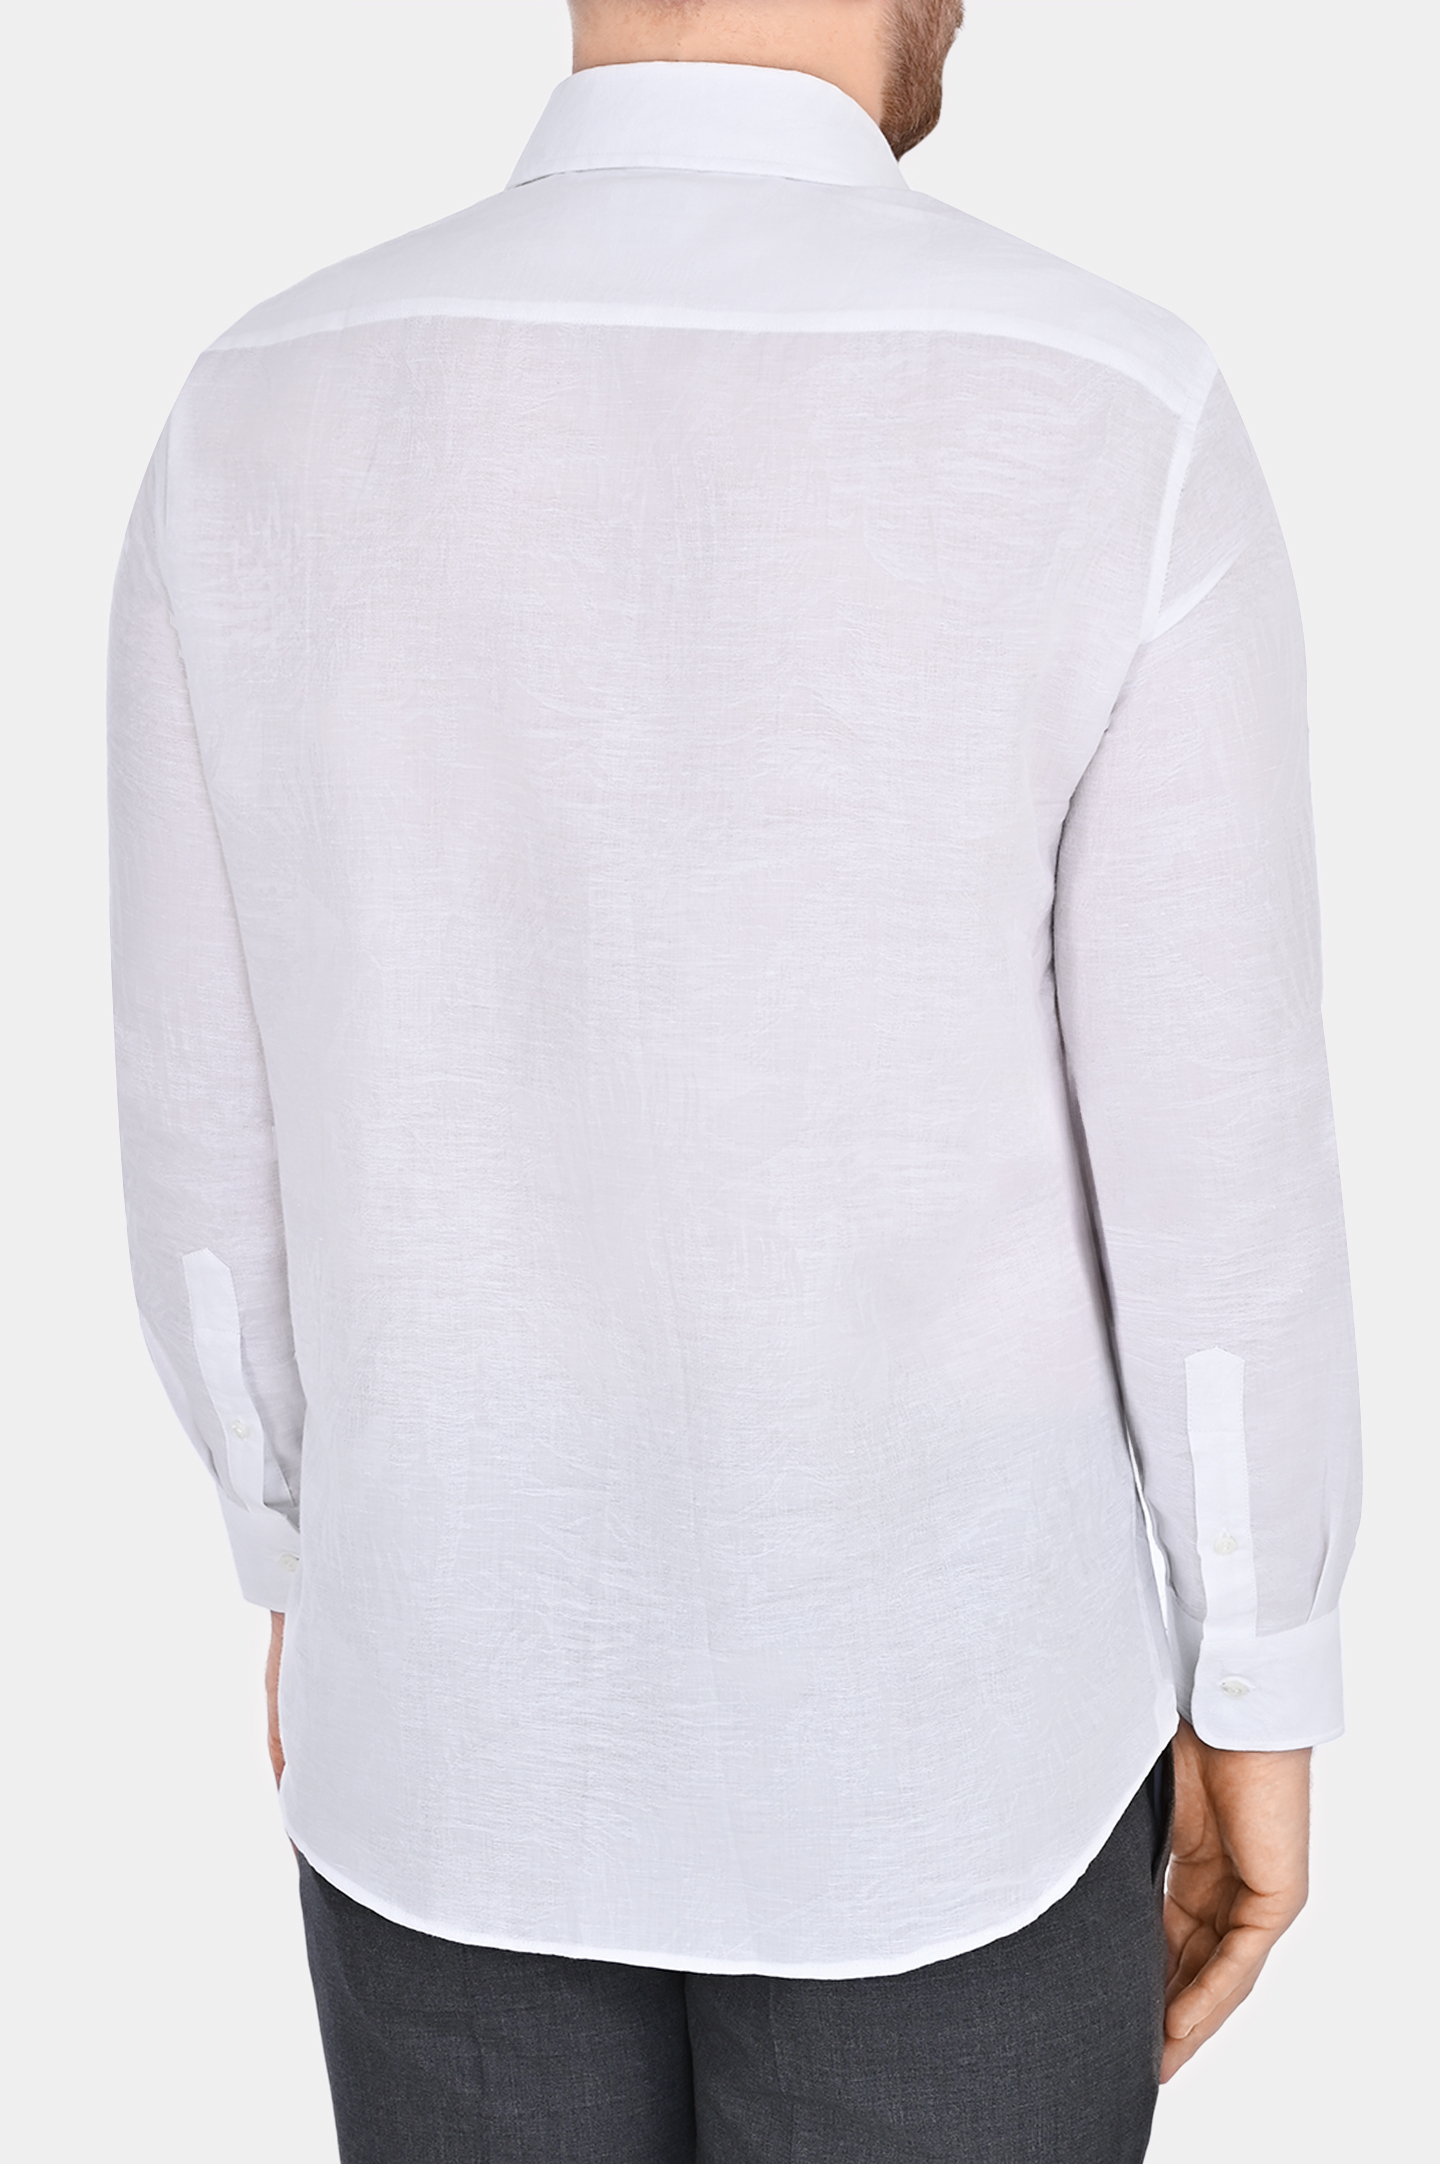 Рубашка из хлопка и льна с косым воротом BRUNELLO  CUCINELLI MM6320627, цвет: Белый, Мужской